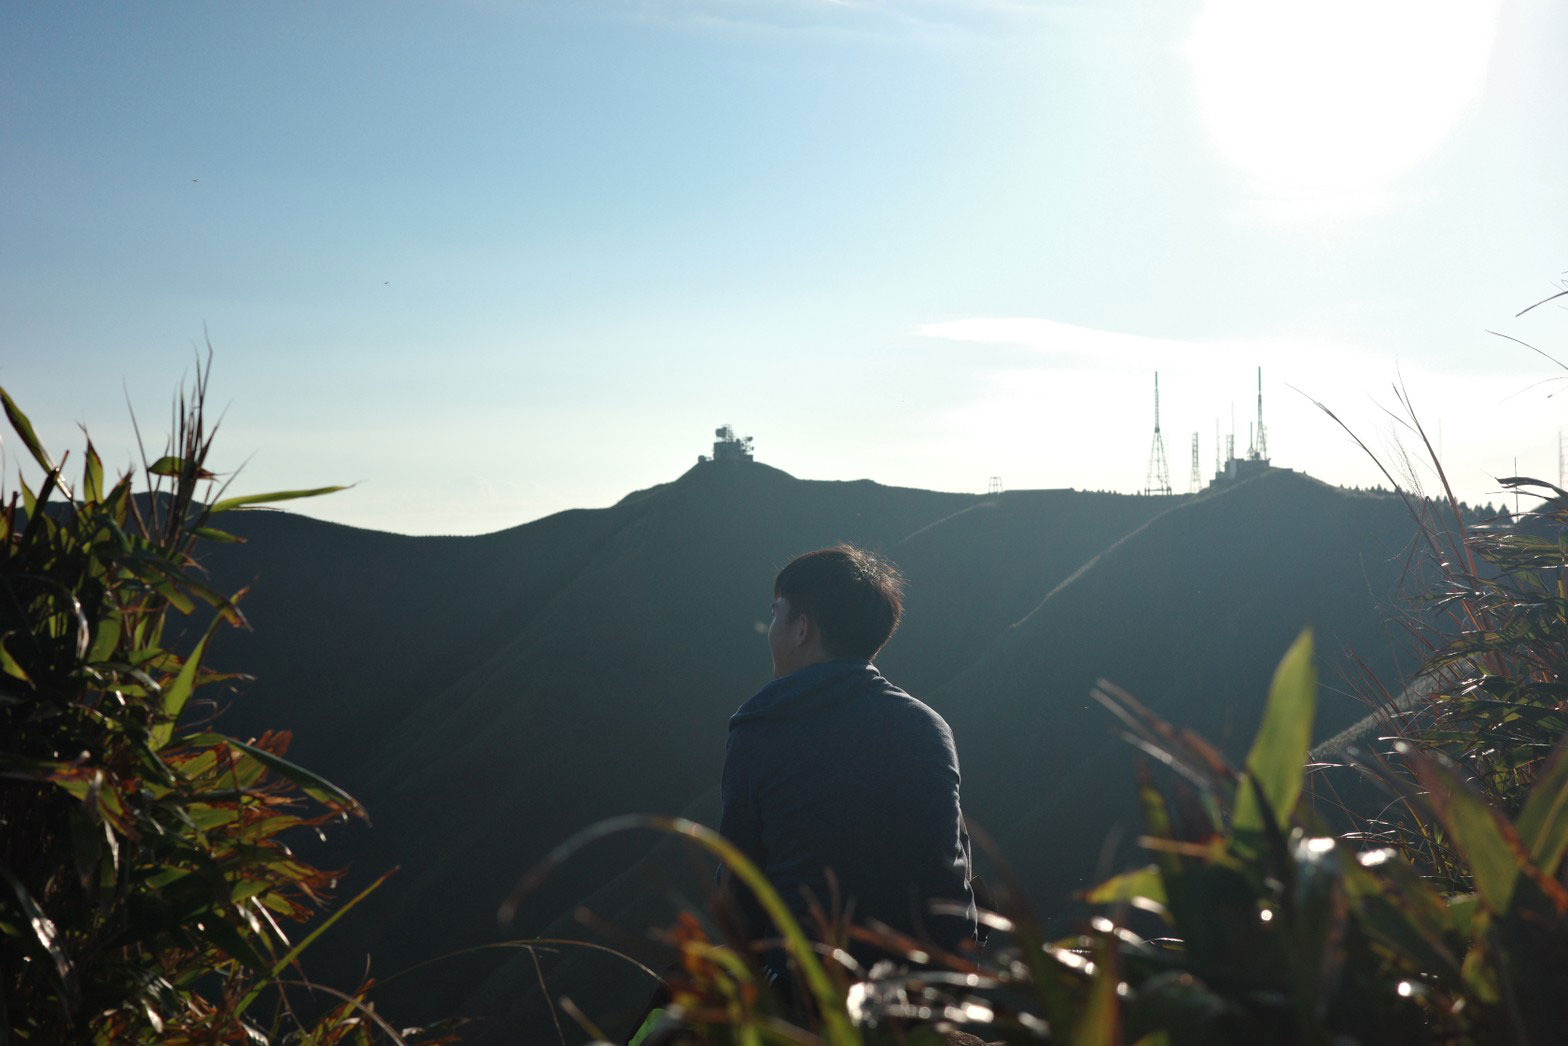 那面黑黑的山坡就是「台北抹茶山」，我們抵達的時間點剛好背光，看不見。(雖然不重要還是說明一下，照片是同行的友人)